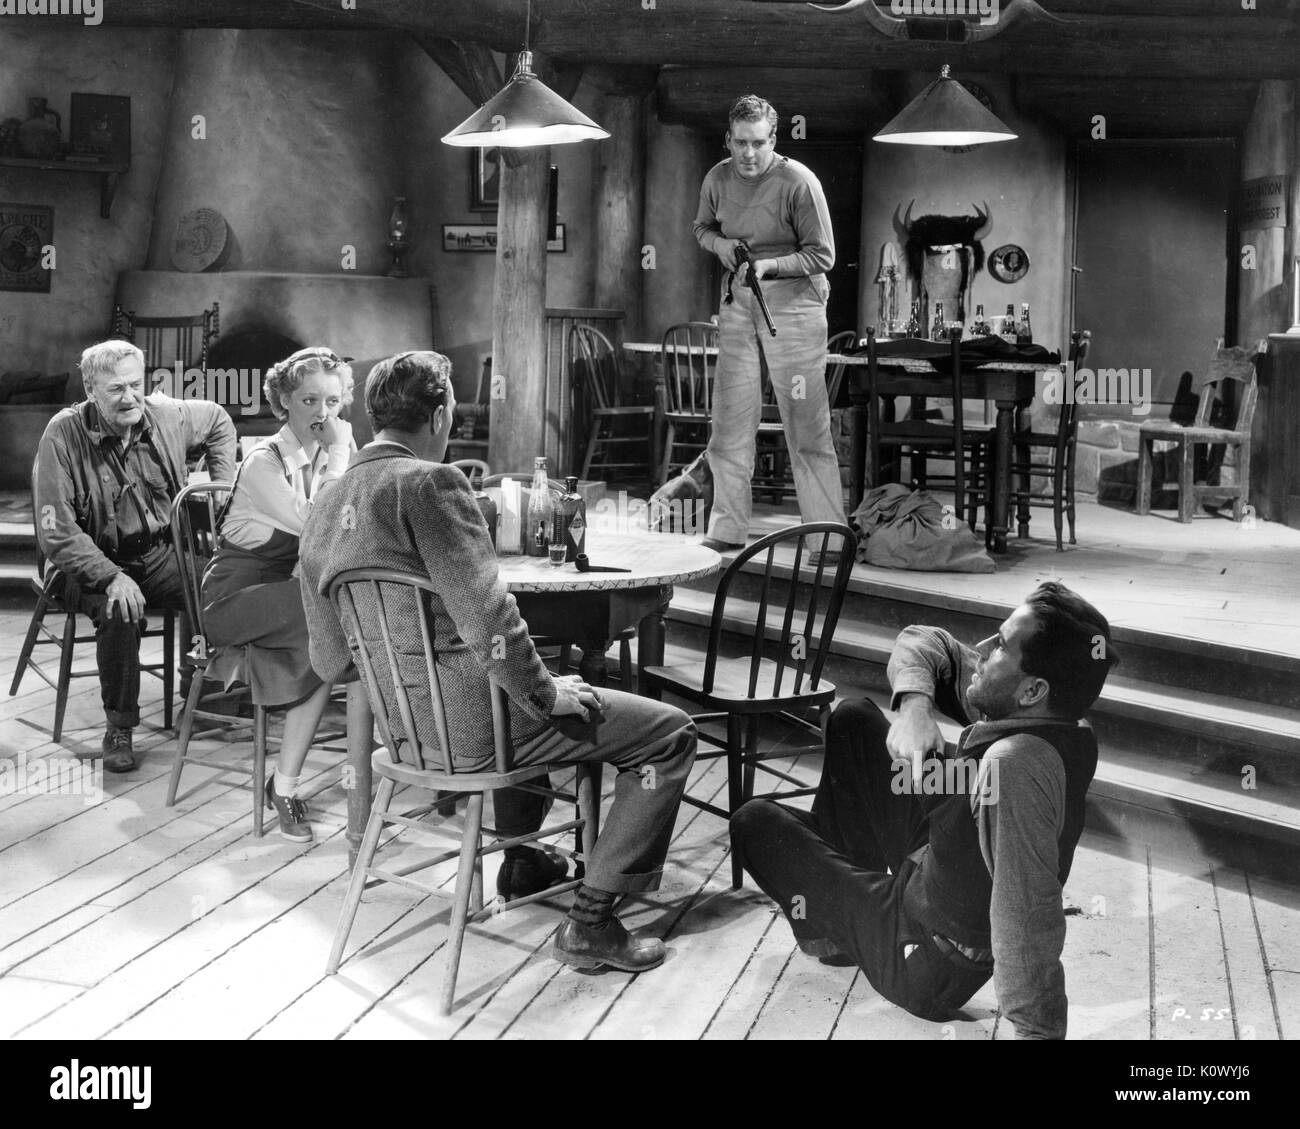 Bette Davis y otros actores en una película del oeste aún, sentados alrededor de una mesa en una casa, un hombre con una escopeta amenazando al grupo, un segundo hombre en el suelo, derribado de su silla, alcanzando una pistola en su chaleco, 1949. Crédito de la foto Smith Colección/Gado/Getty Images. Foto de stock